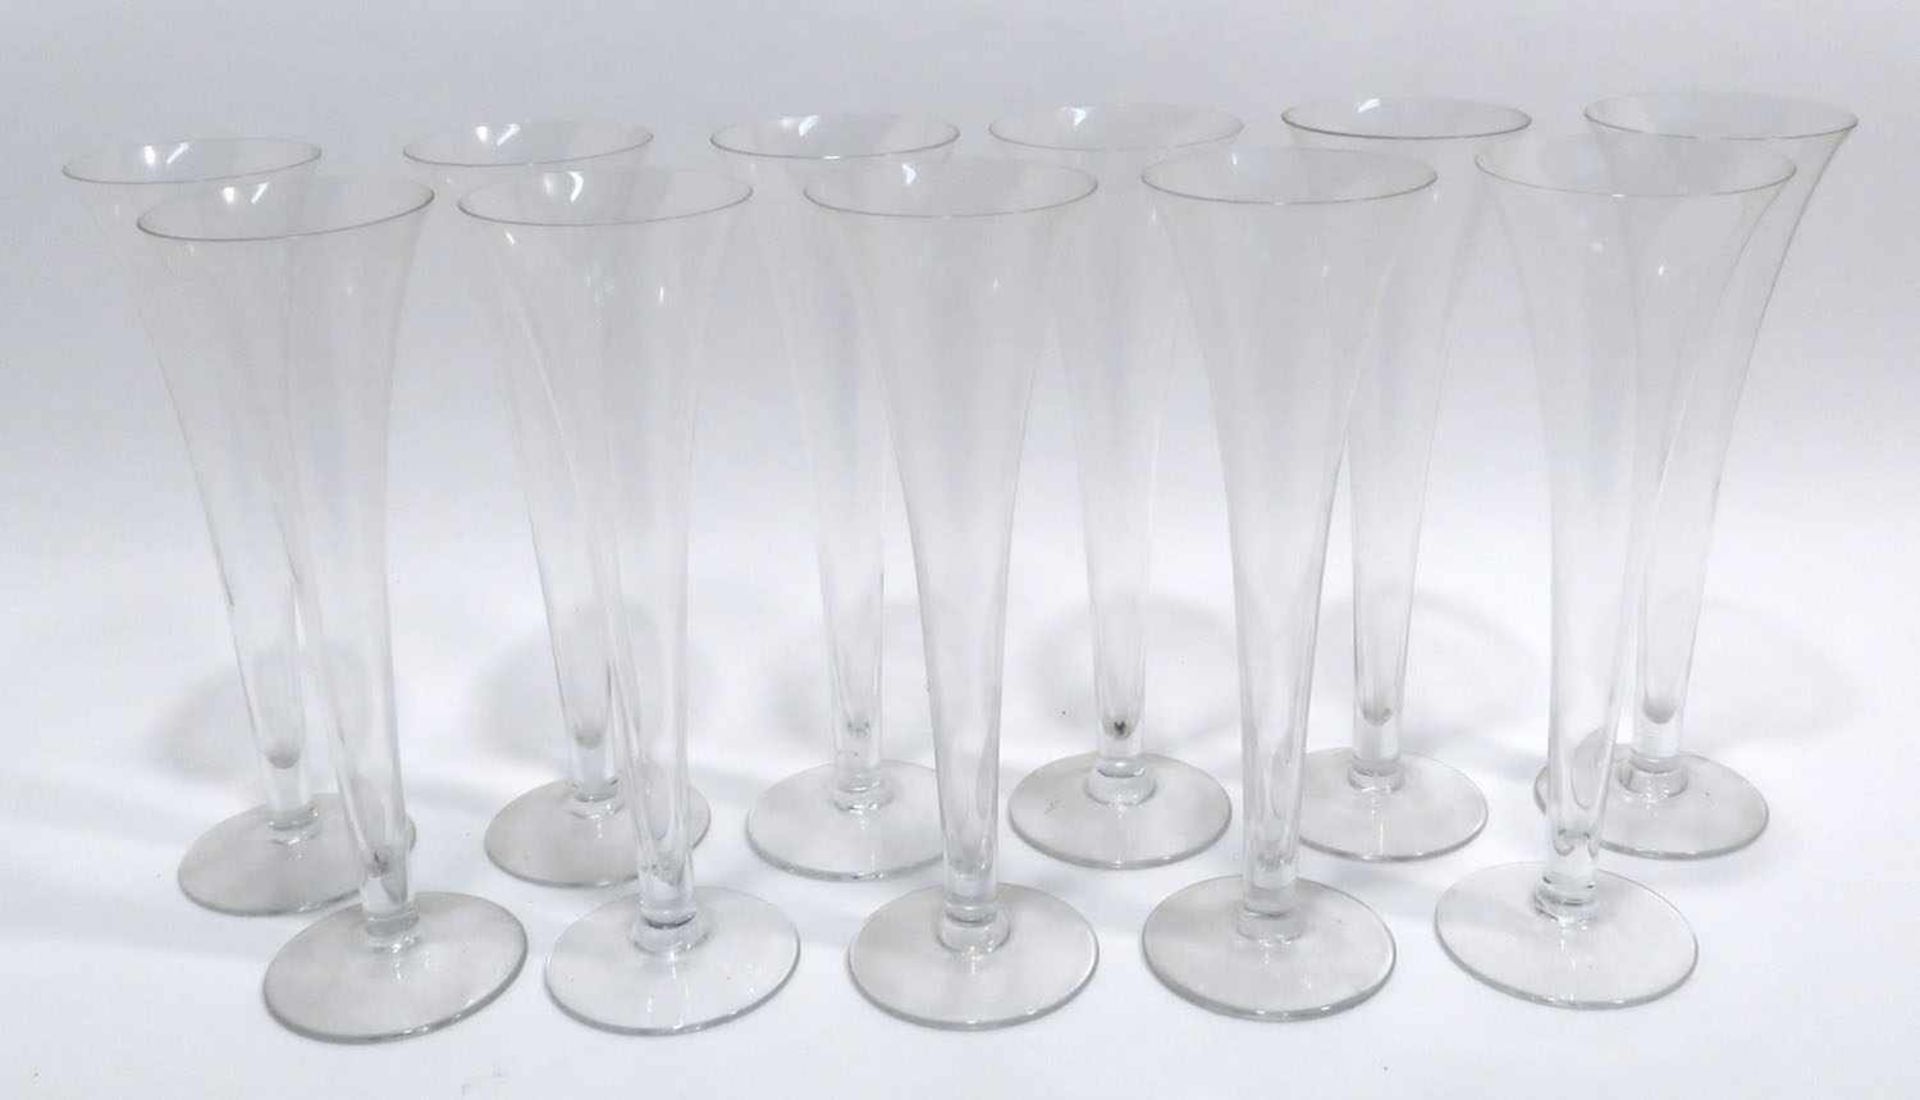 Elf SektflötenFarbloses Glas. H. 21 cm.